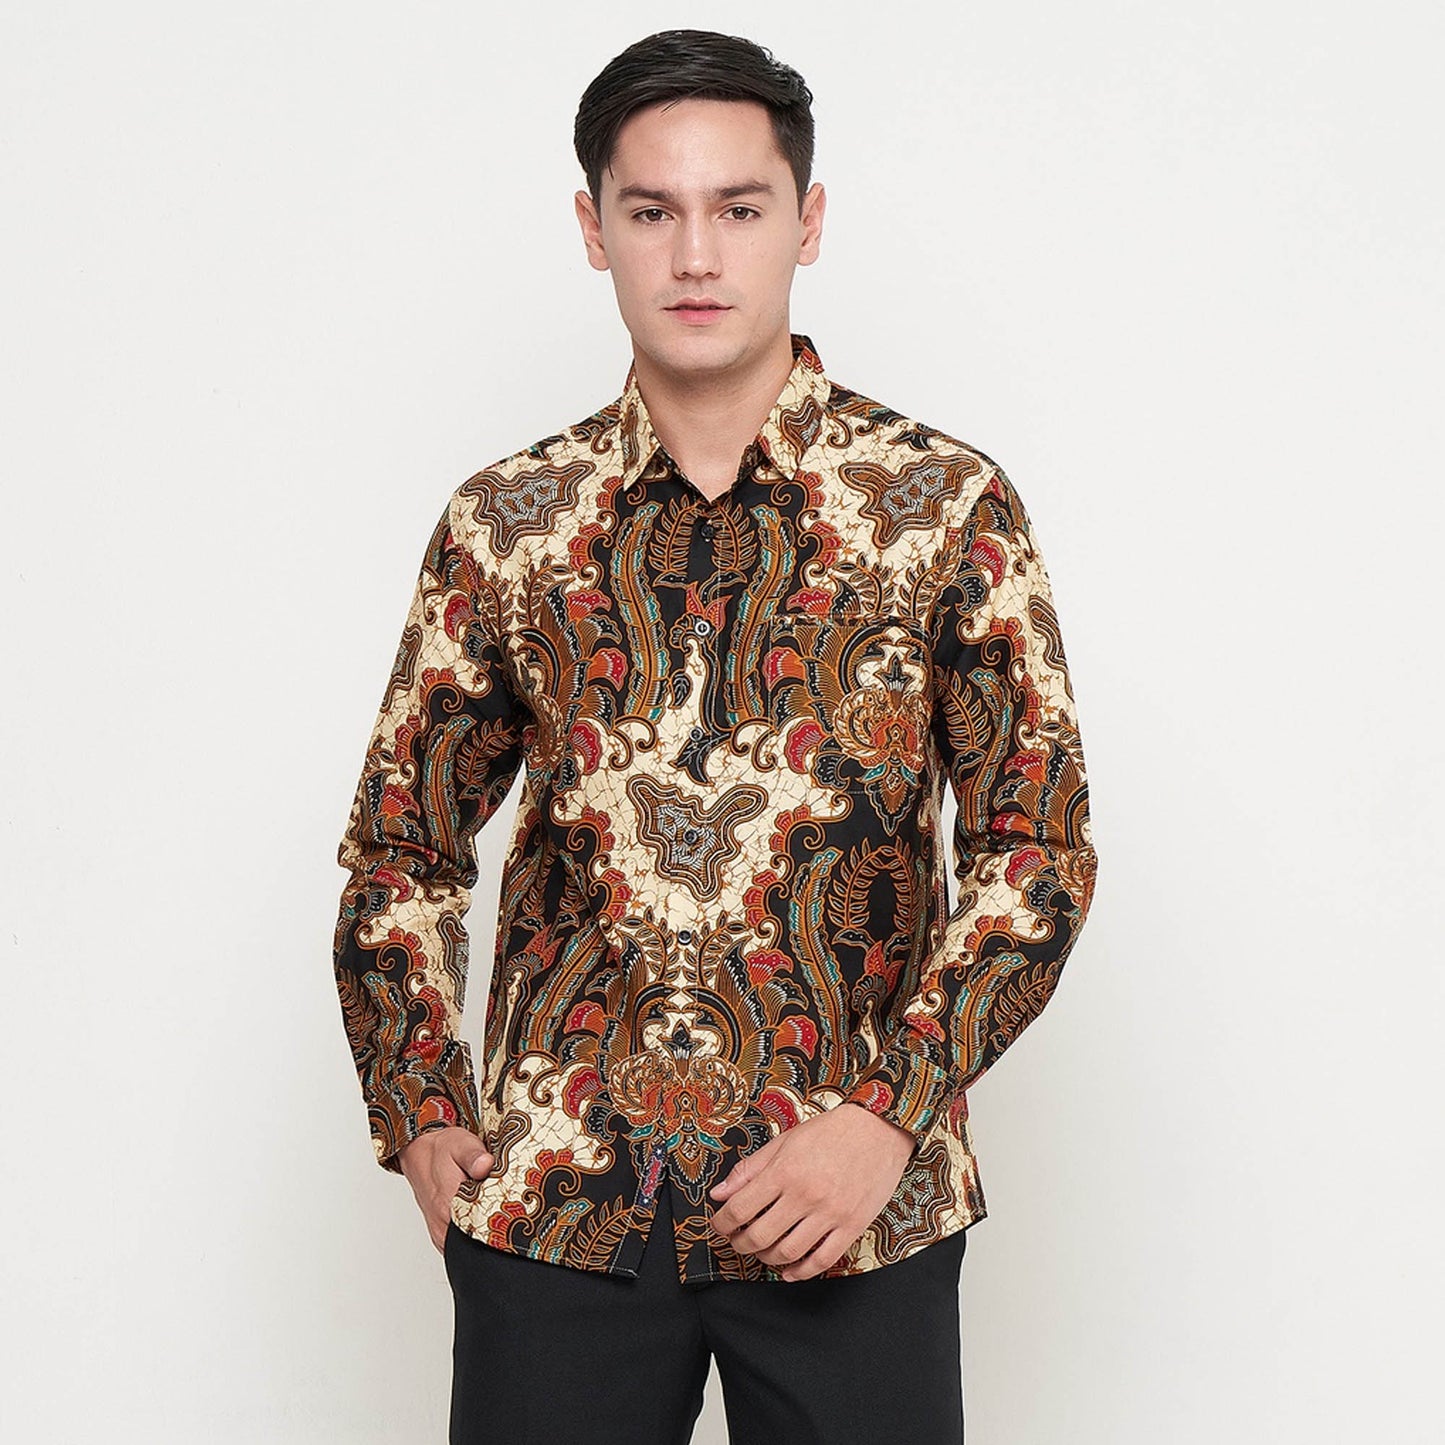 Modern Men's Batik Shirt - Black Basic Long Sleeve Batik Top, Stylish Men, Men Batik, Batik, Batik Shirt, Formal Shirt For Men